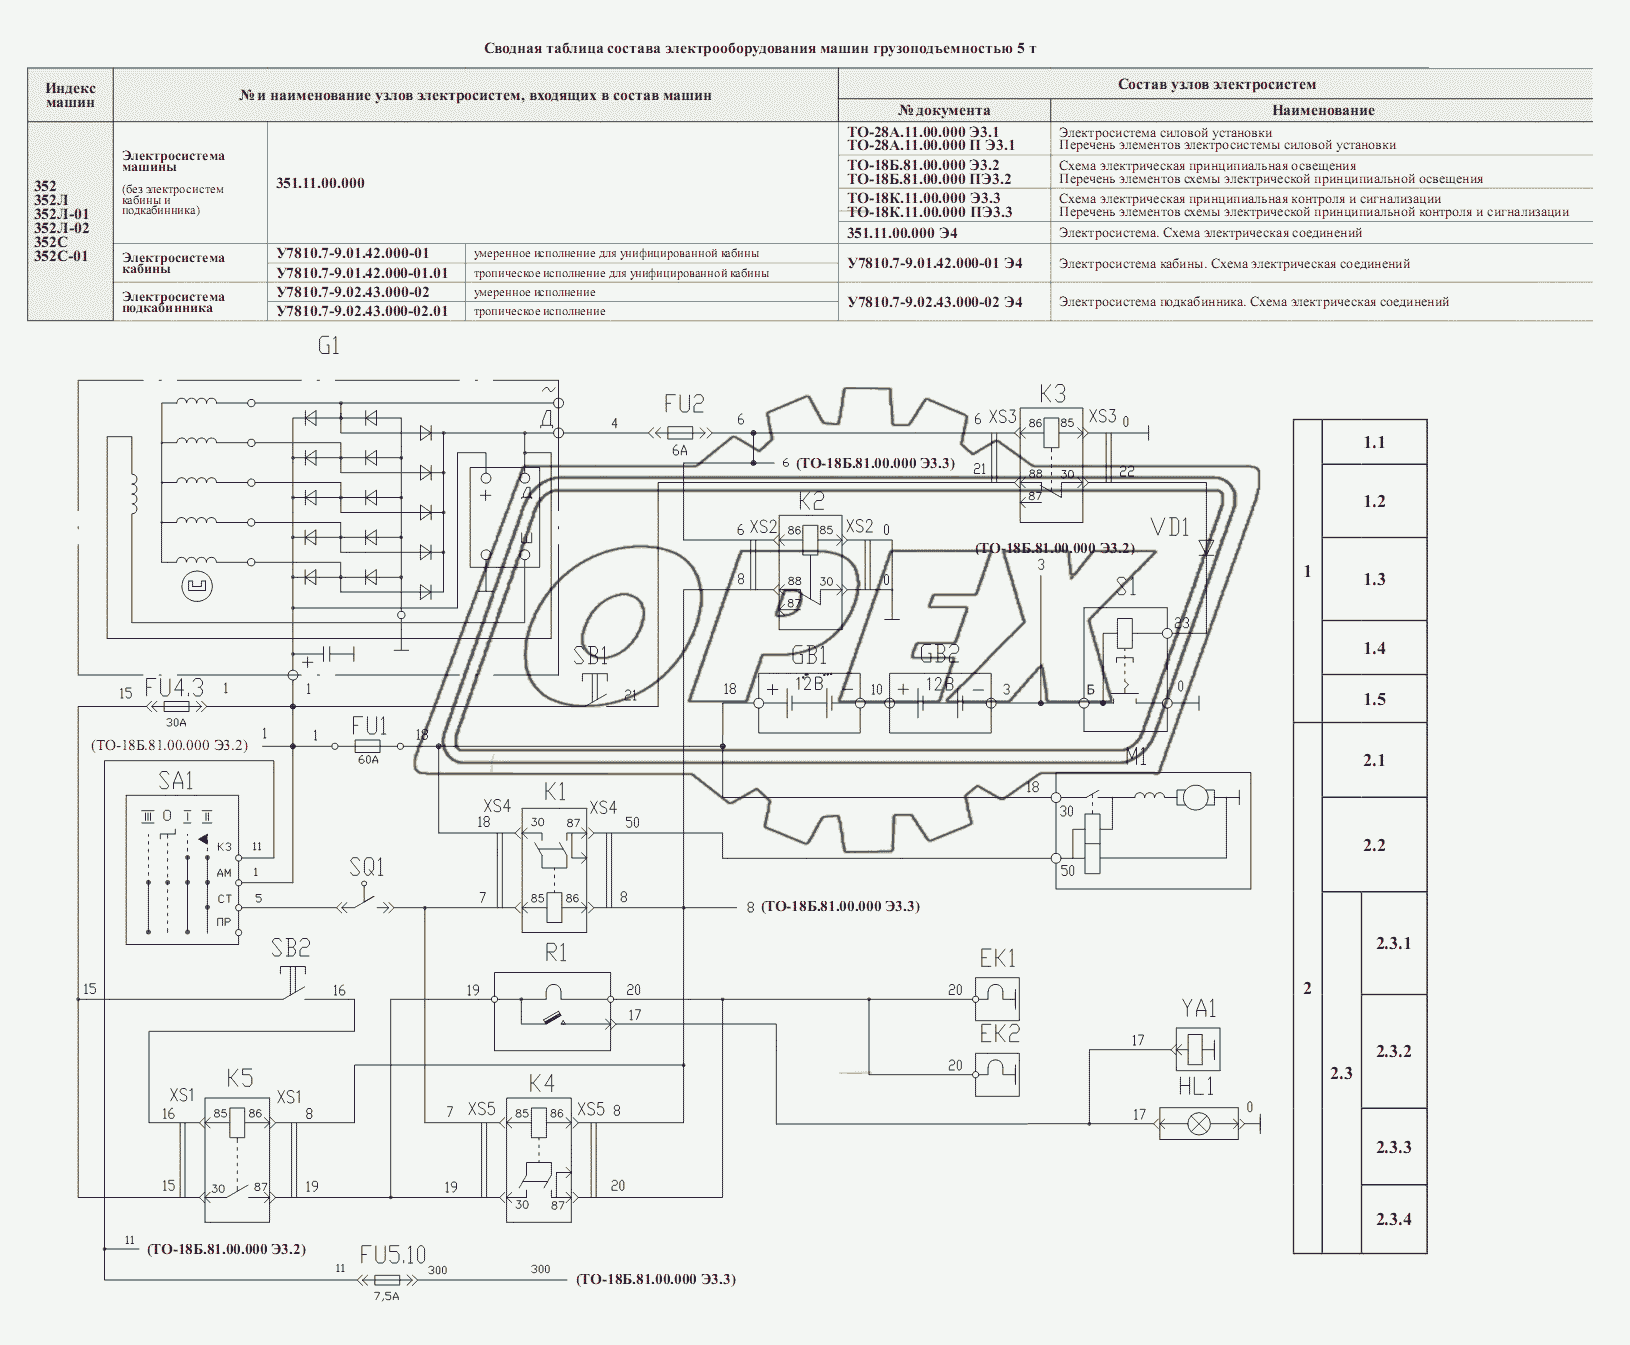 Схема электрическая силовой установки ТО-28А.11.00.000 Э3.1